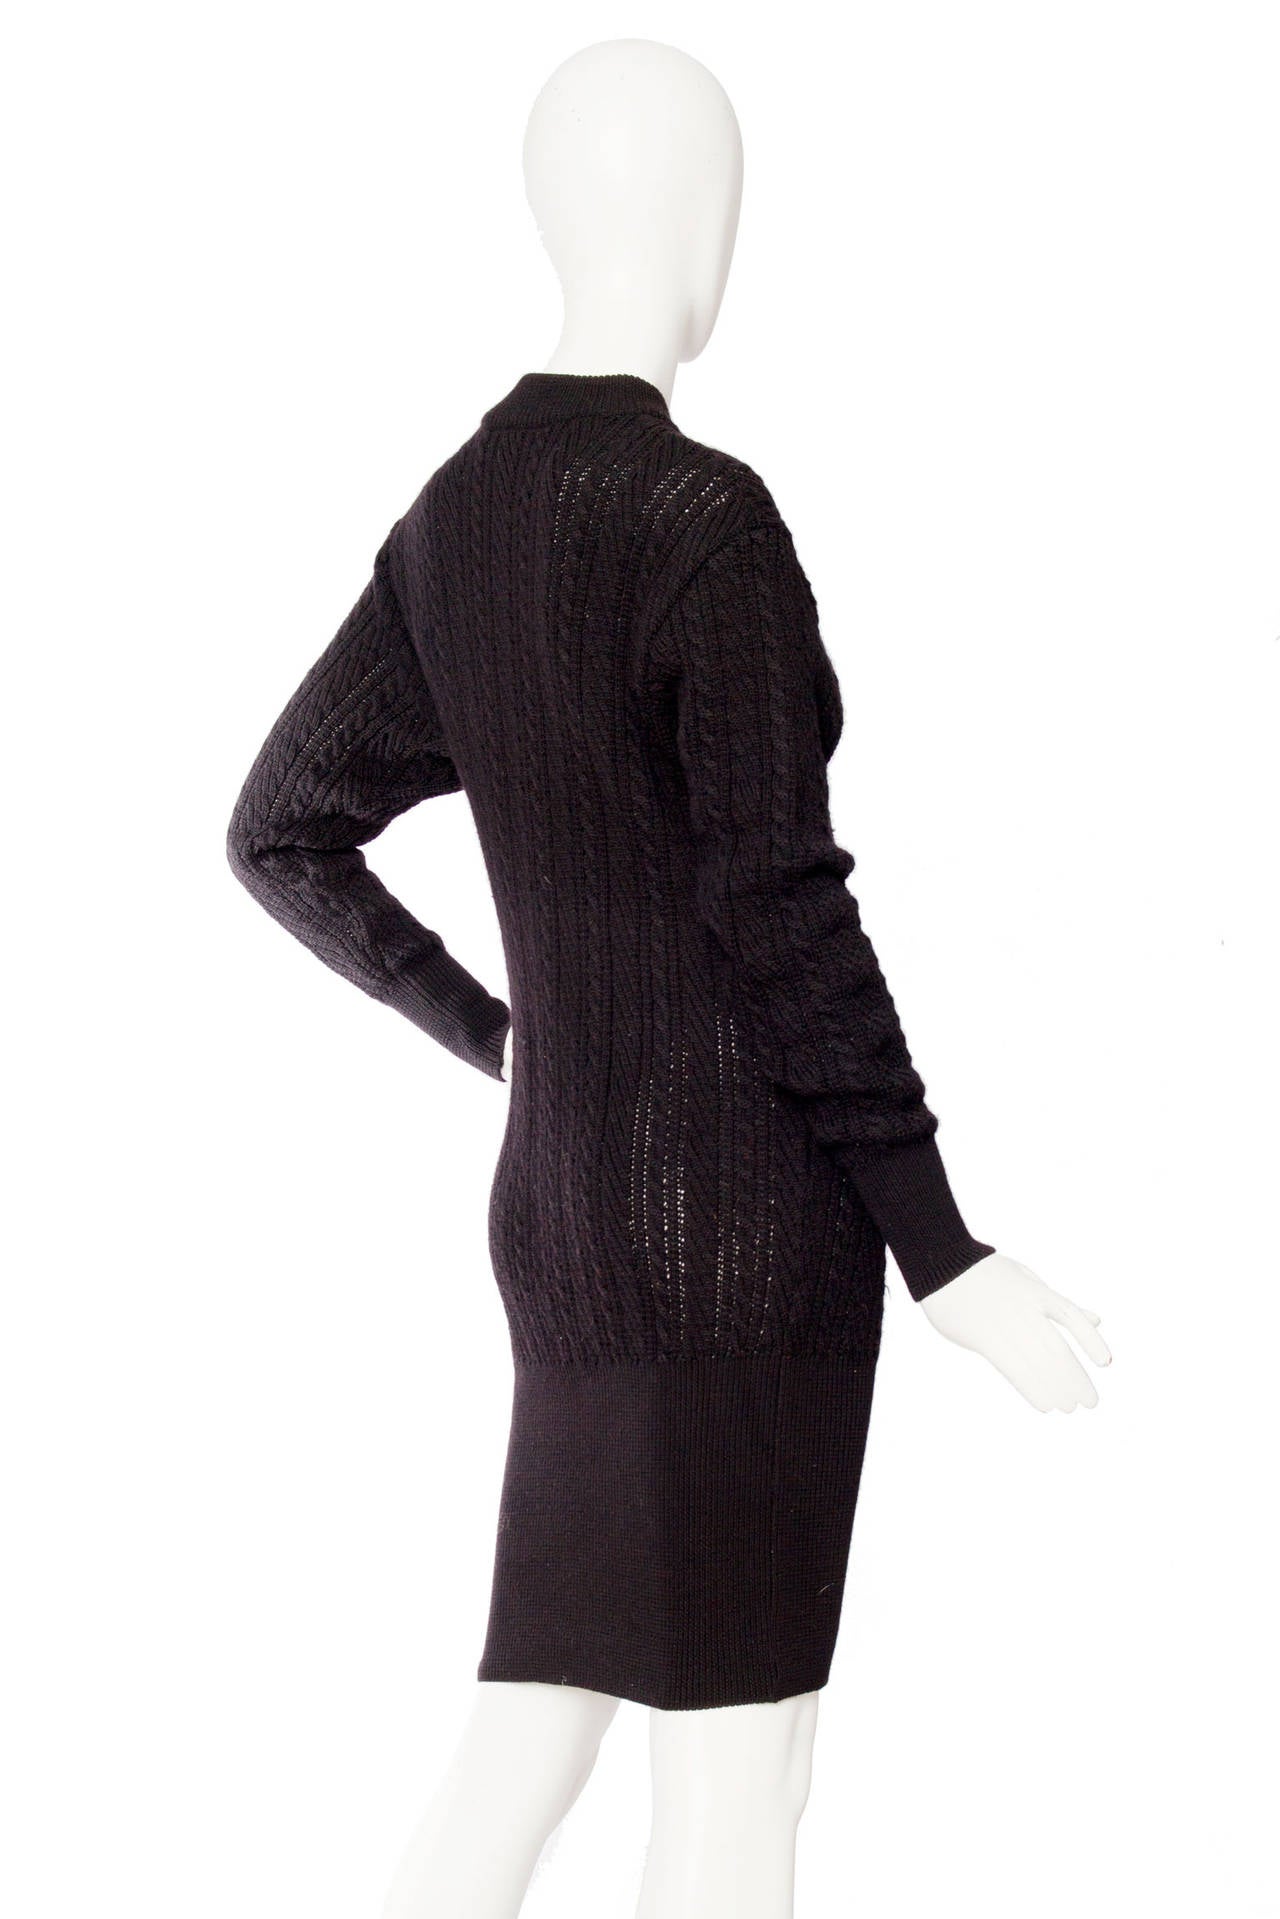 Women's 1980s Yves Saint Laurent Black Cable Knit Dress